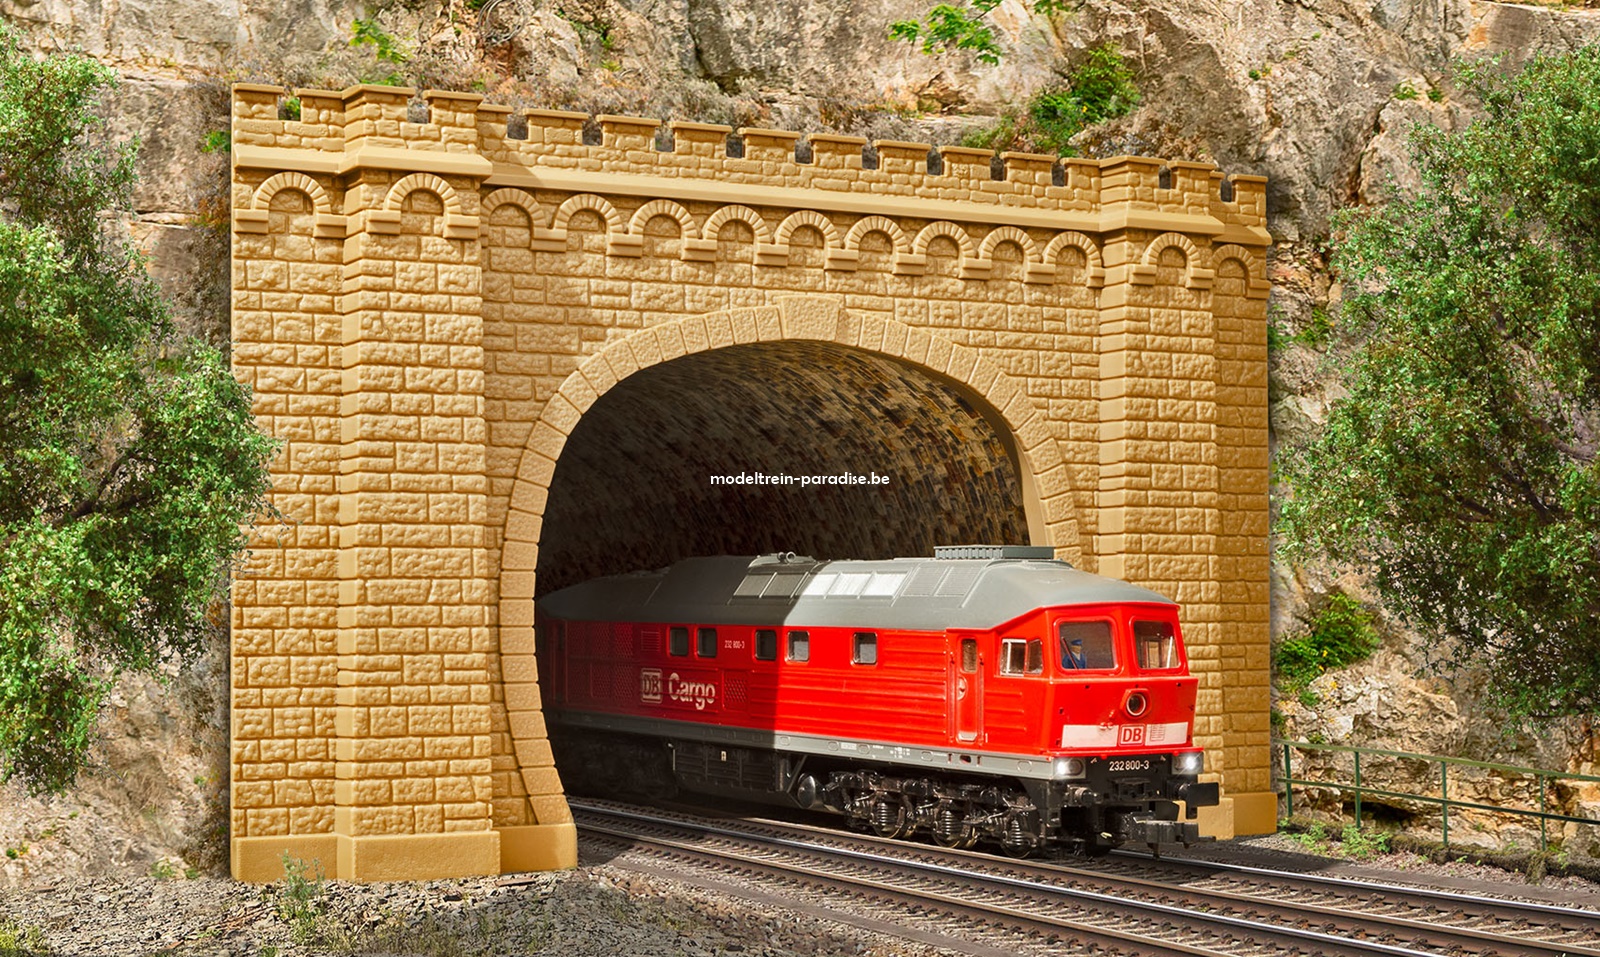 42506 ... Tunnelportaal "Moseltal", 2 sporen